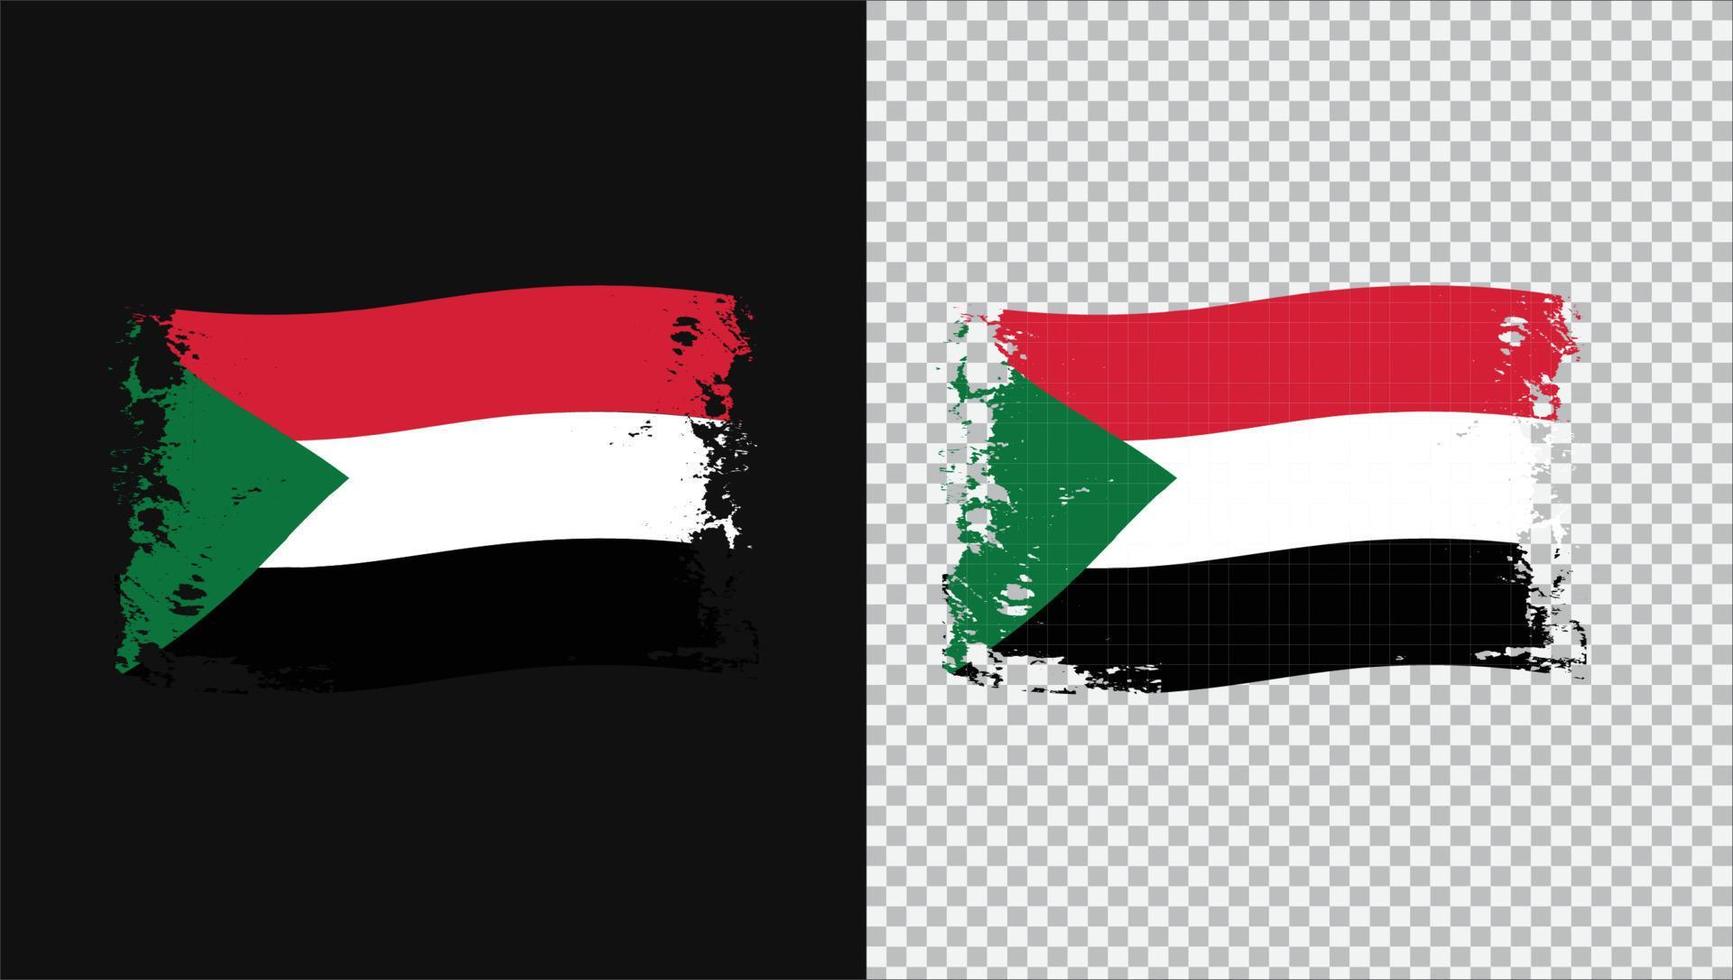 Soudan pays drapeau ondulé transparent grunge brush png vecteur